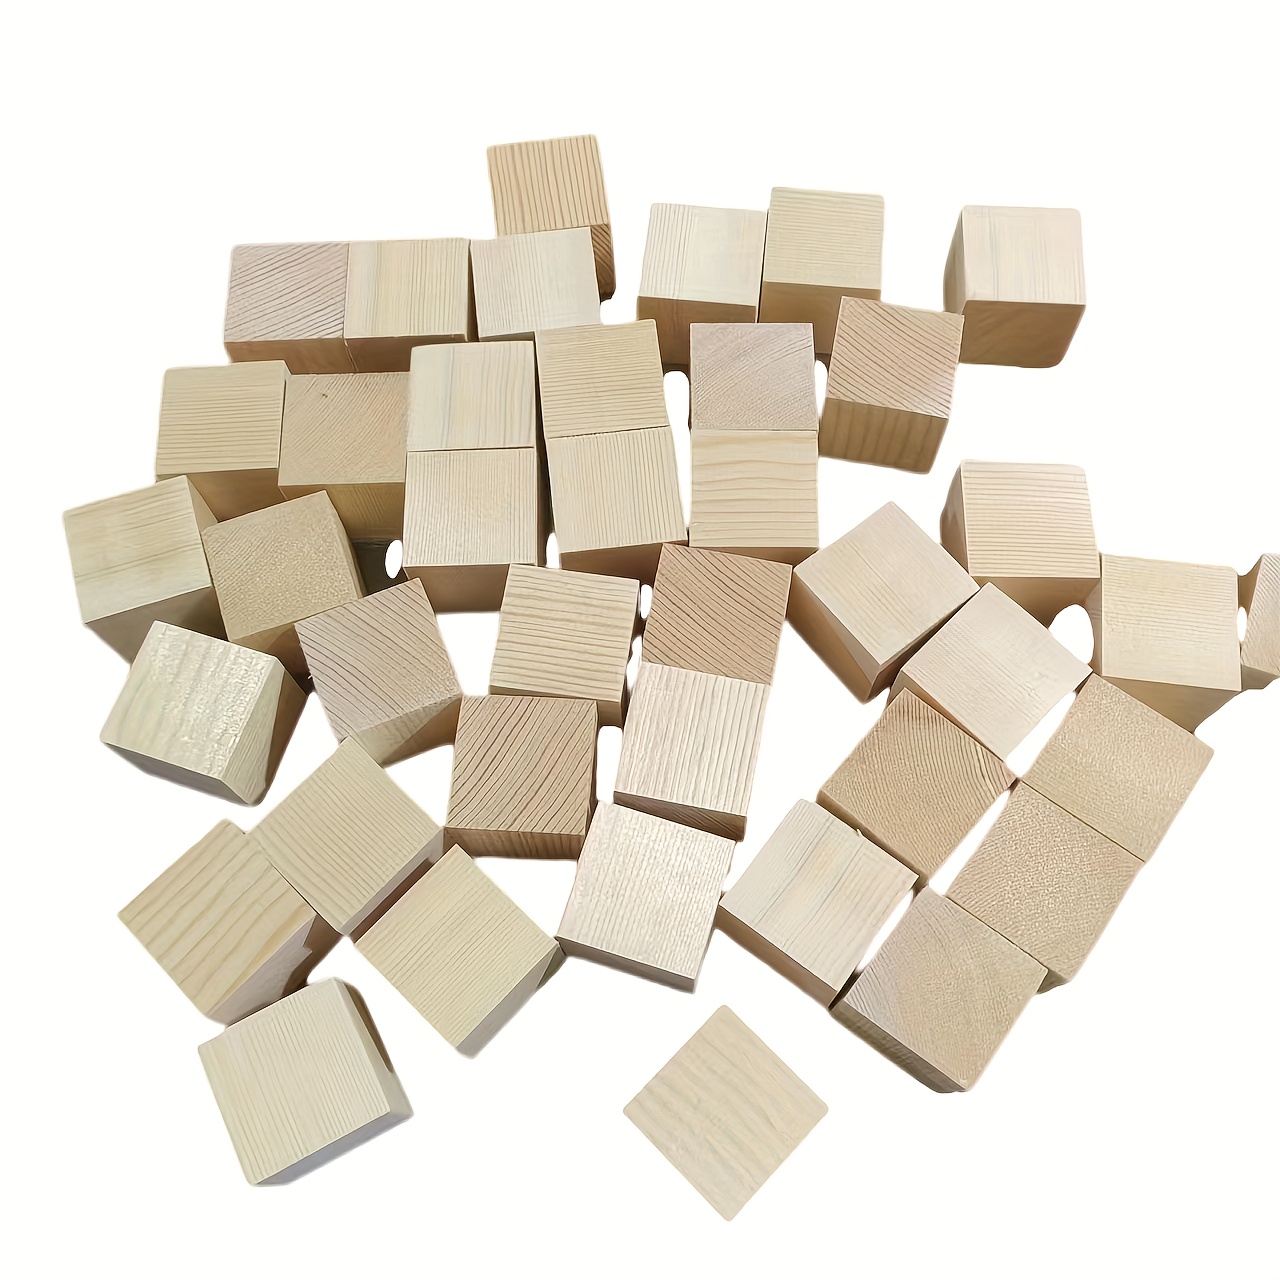 Cubitos de madera, 200 piezas de bloques de madera cuadrados naturales sin  terminar para manualidades